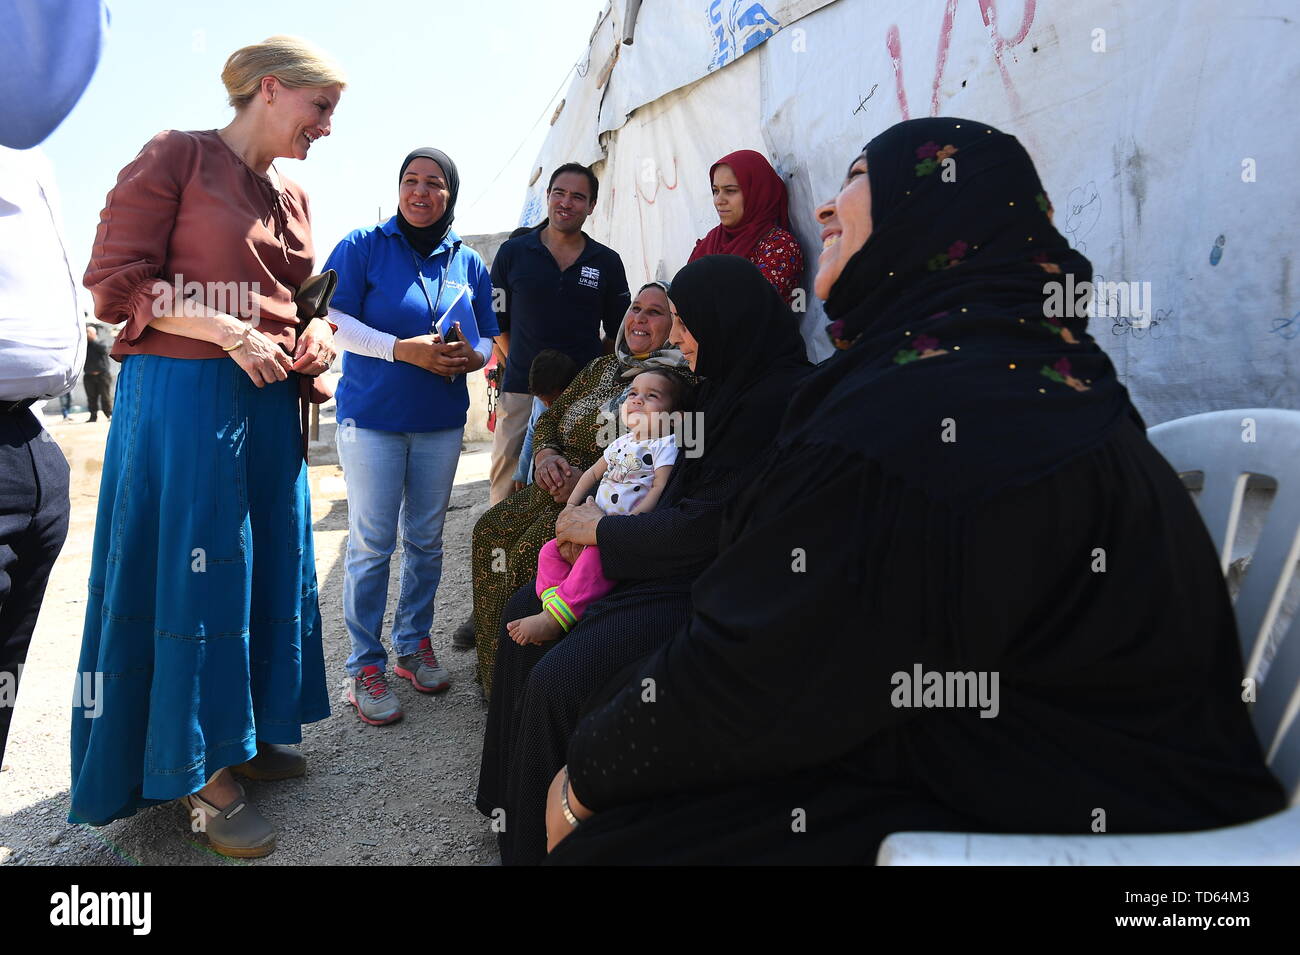 La Contessa di Wessex incontrare donne siriano, compresi i profughi in Libano dal conflitto siriano, in occasione di una visita ad un informale tented insediamento nella valle della Bekaa, Libano, durante il primo ufficiale di Royal visita al paese. Foto Stock